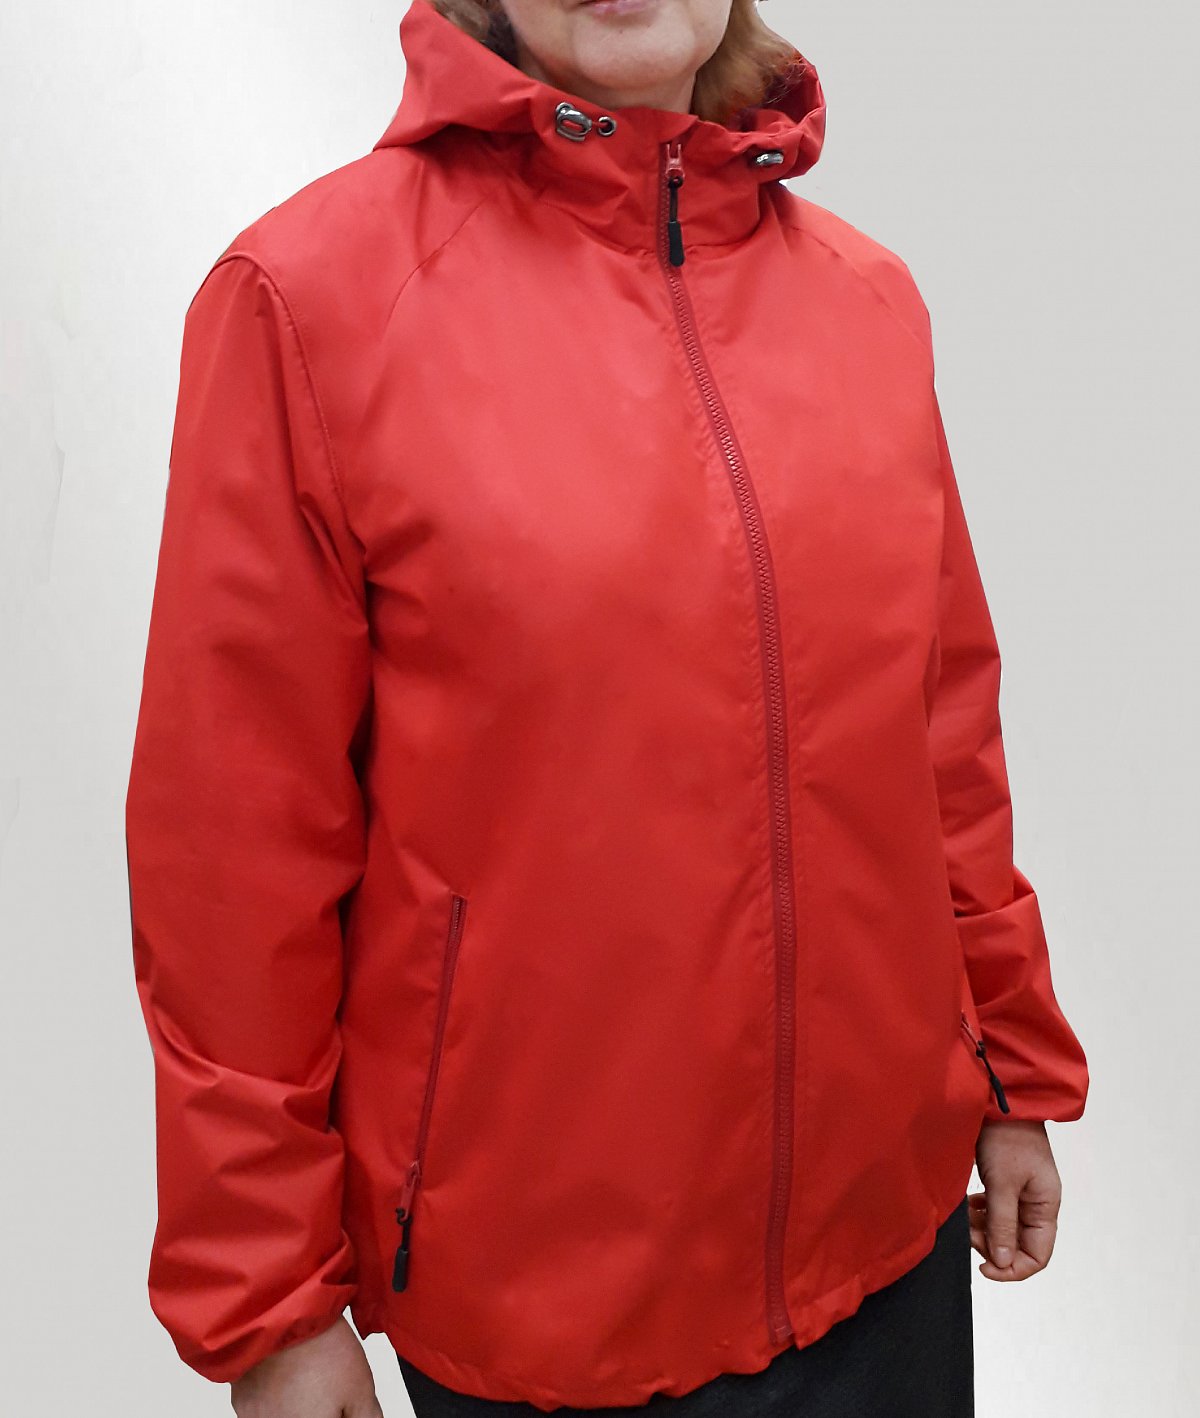 Пошив курток - пример модели женская куртка ветровка